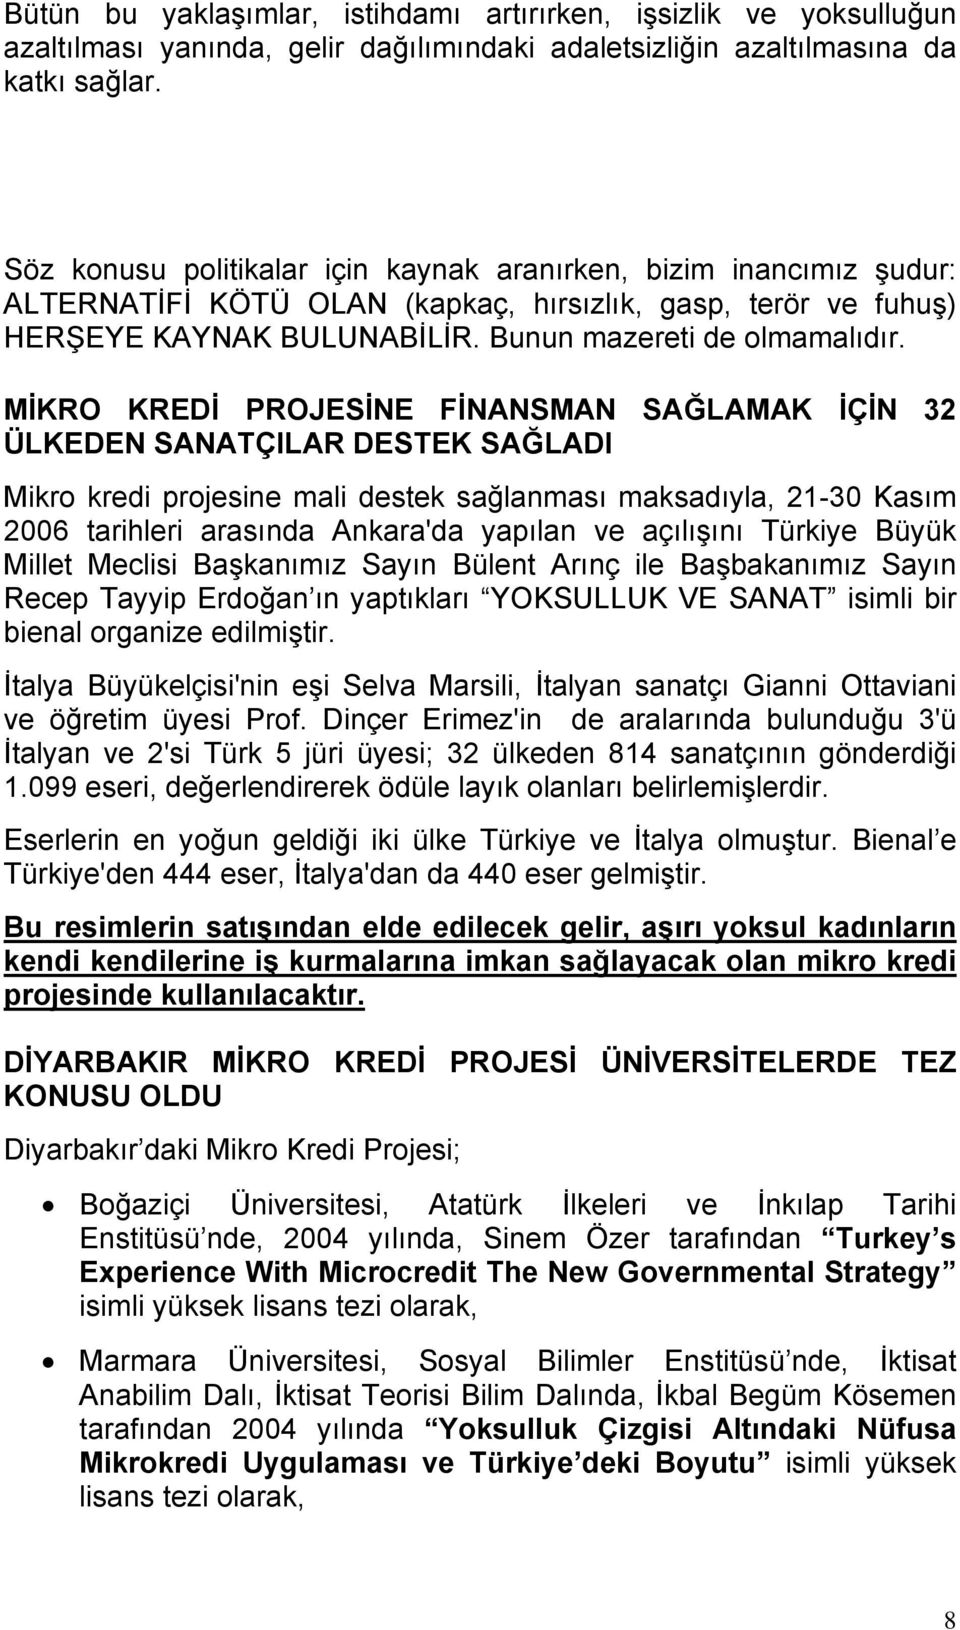 MİKRO KREDİ PROJESİNE FİNANSMAN SAĞLAMAK İÇİN 32 ÜLKEDEN SANATÇILAR DESTEK SAĞLADI Mikro kredi projesine mali destek sağlanması maksadıyla, 21-30 Kasım 2006 tarihleri arasında Ankara'da yapılan ve